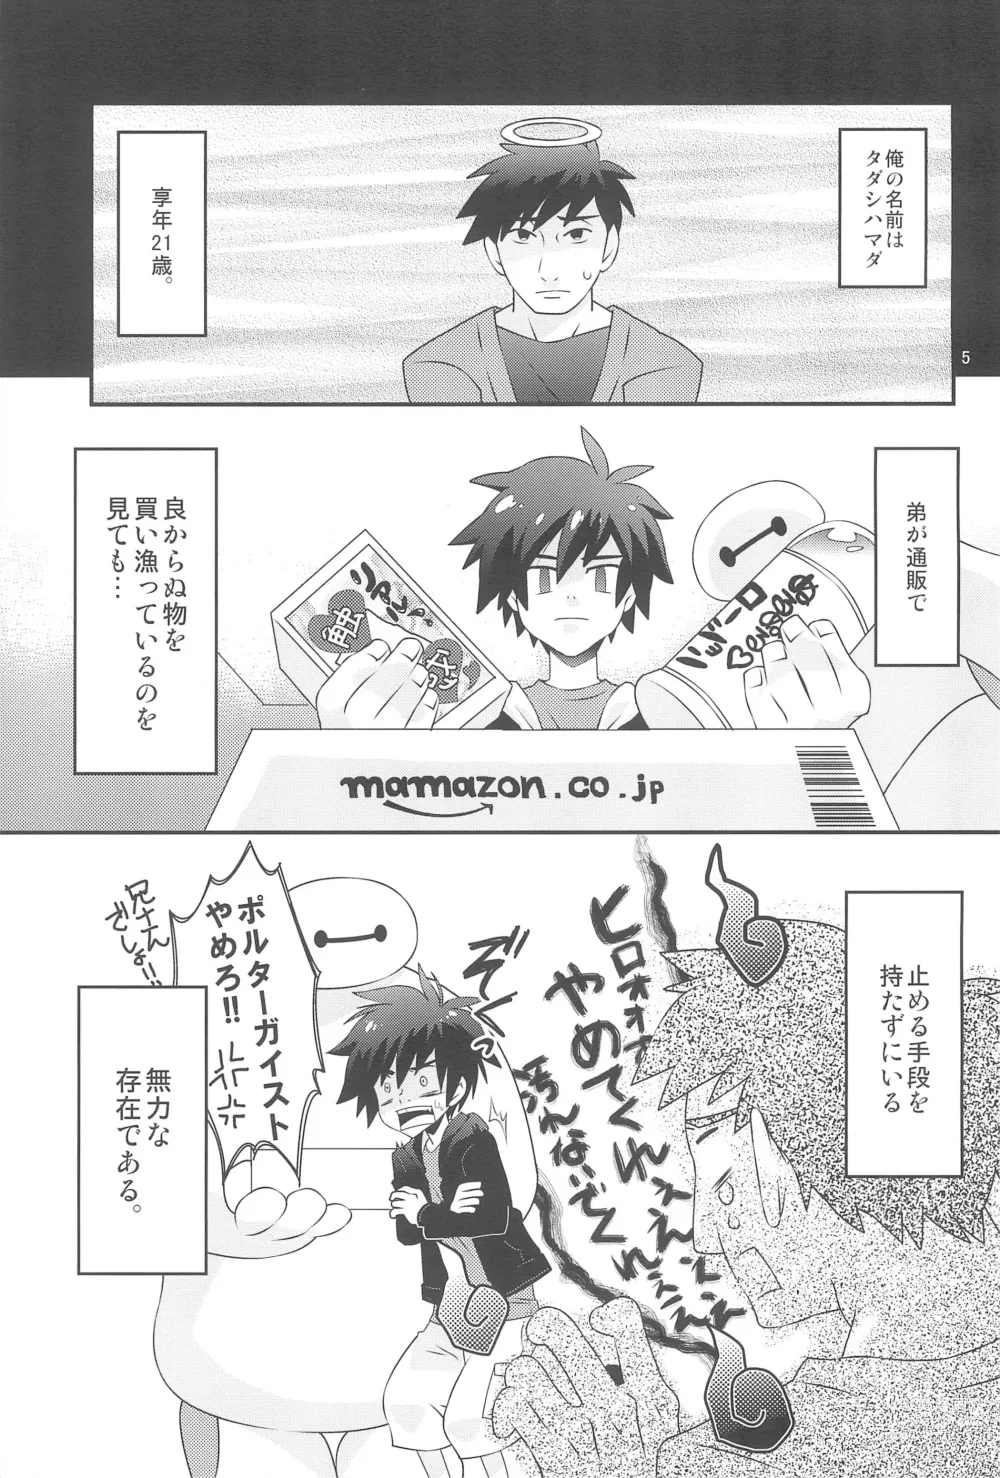 Page 5 of doujinshi Hiro-kun no Hajimete.